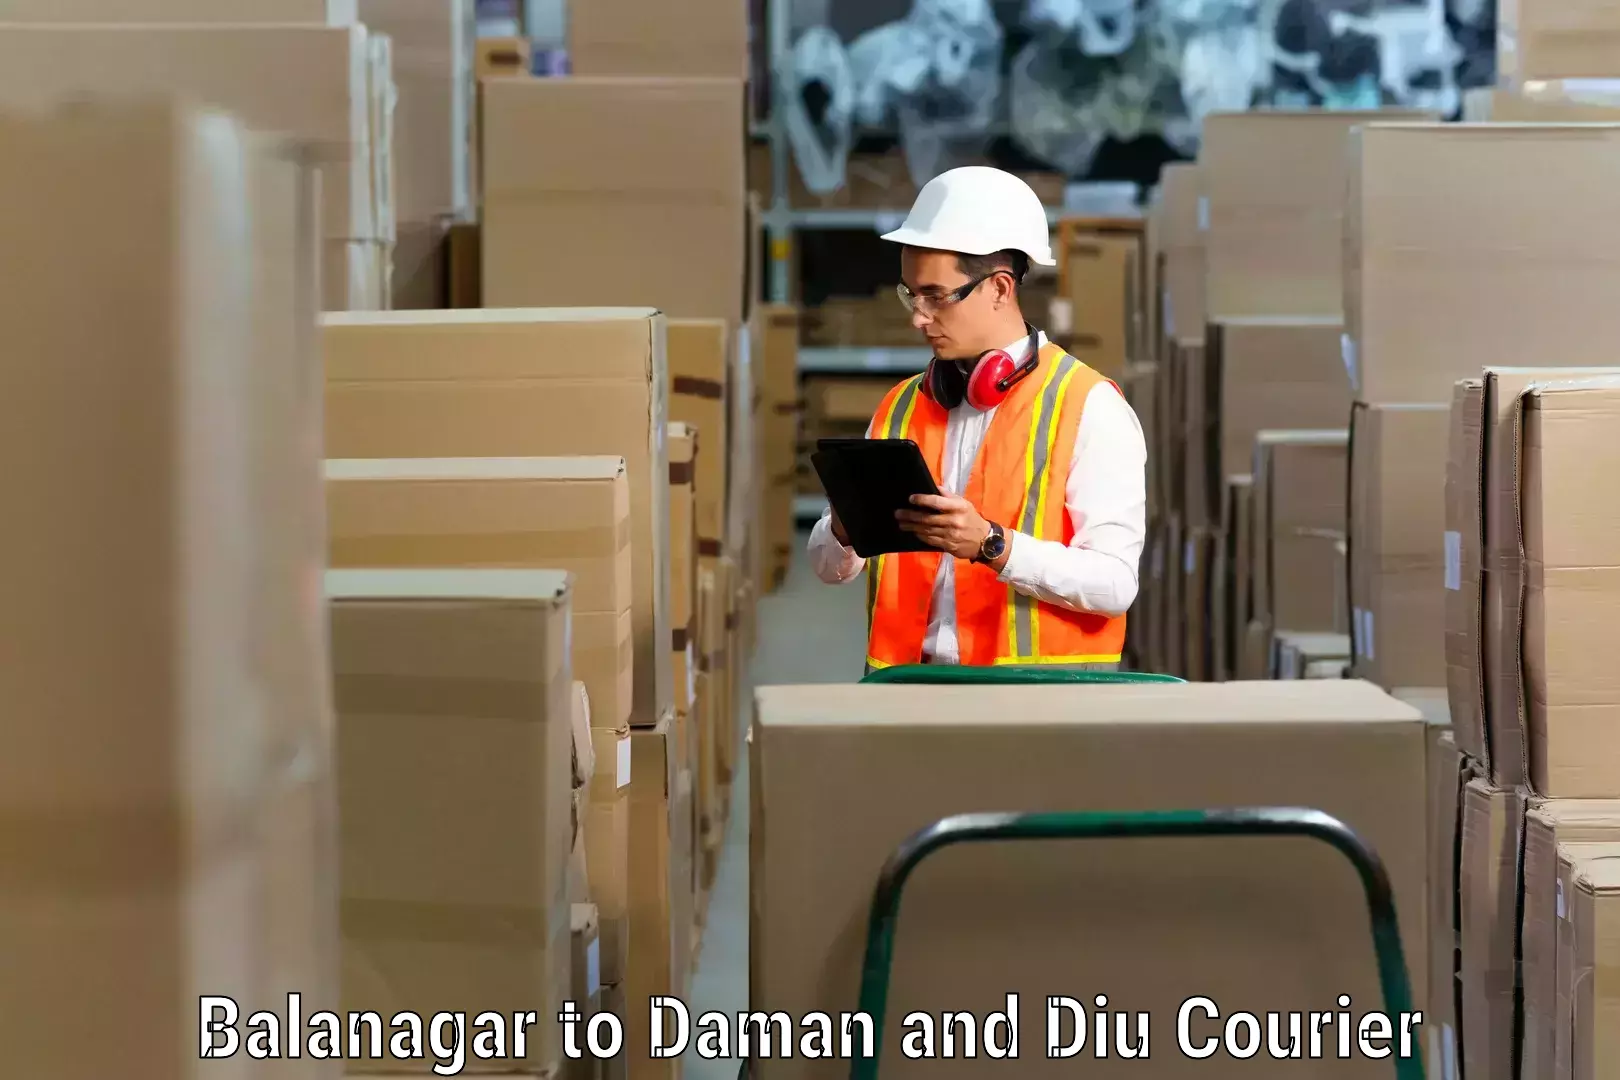 Furniture transport and logistics Balanagar to Daman and Diu